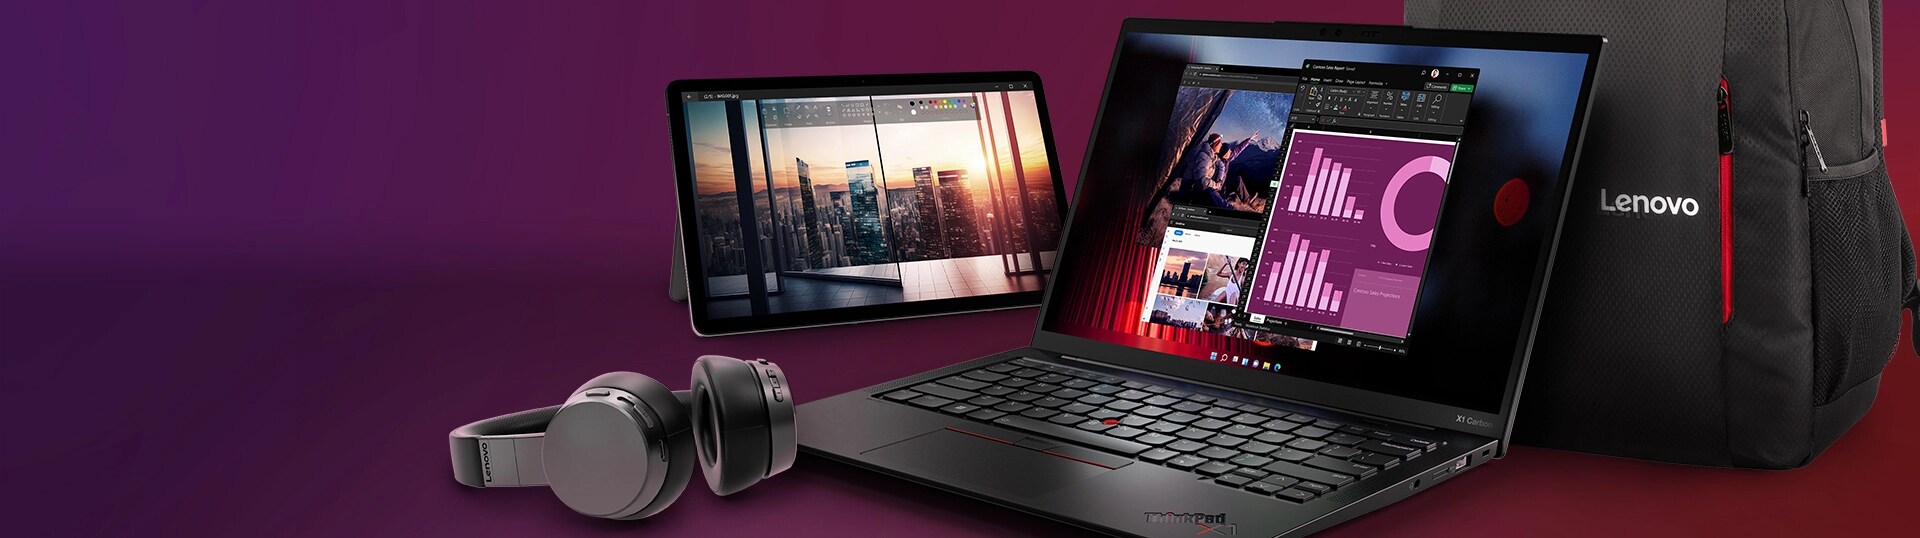 Portable Think X1 Carbon noir, tablette Lenovo avec stylet, écouteurs sans fil, sac à dos noir